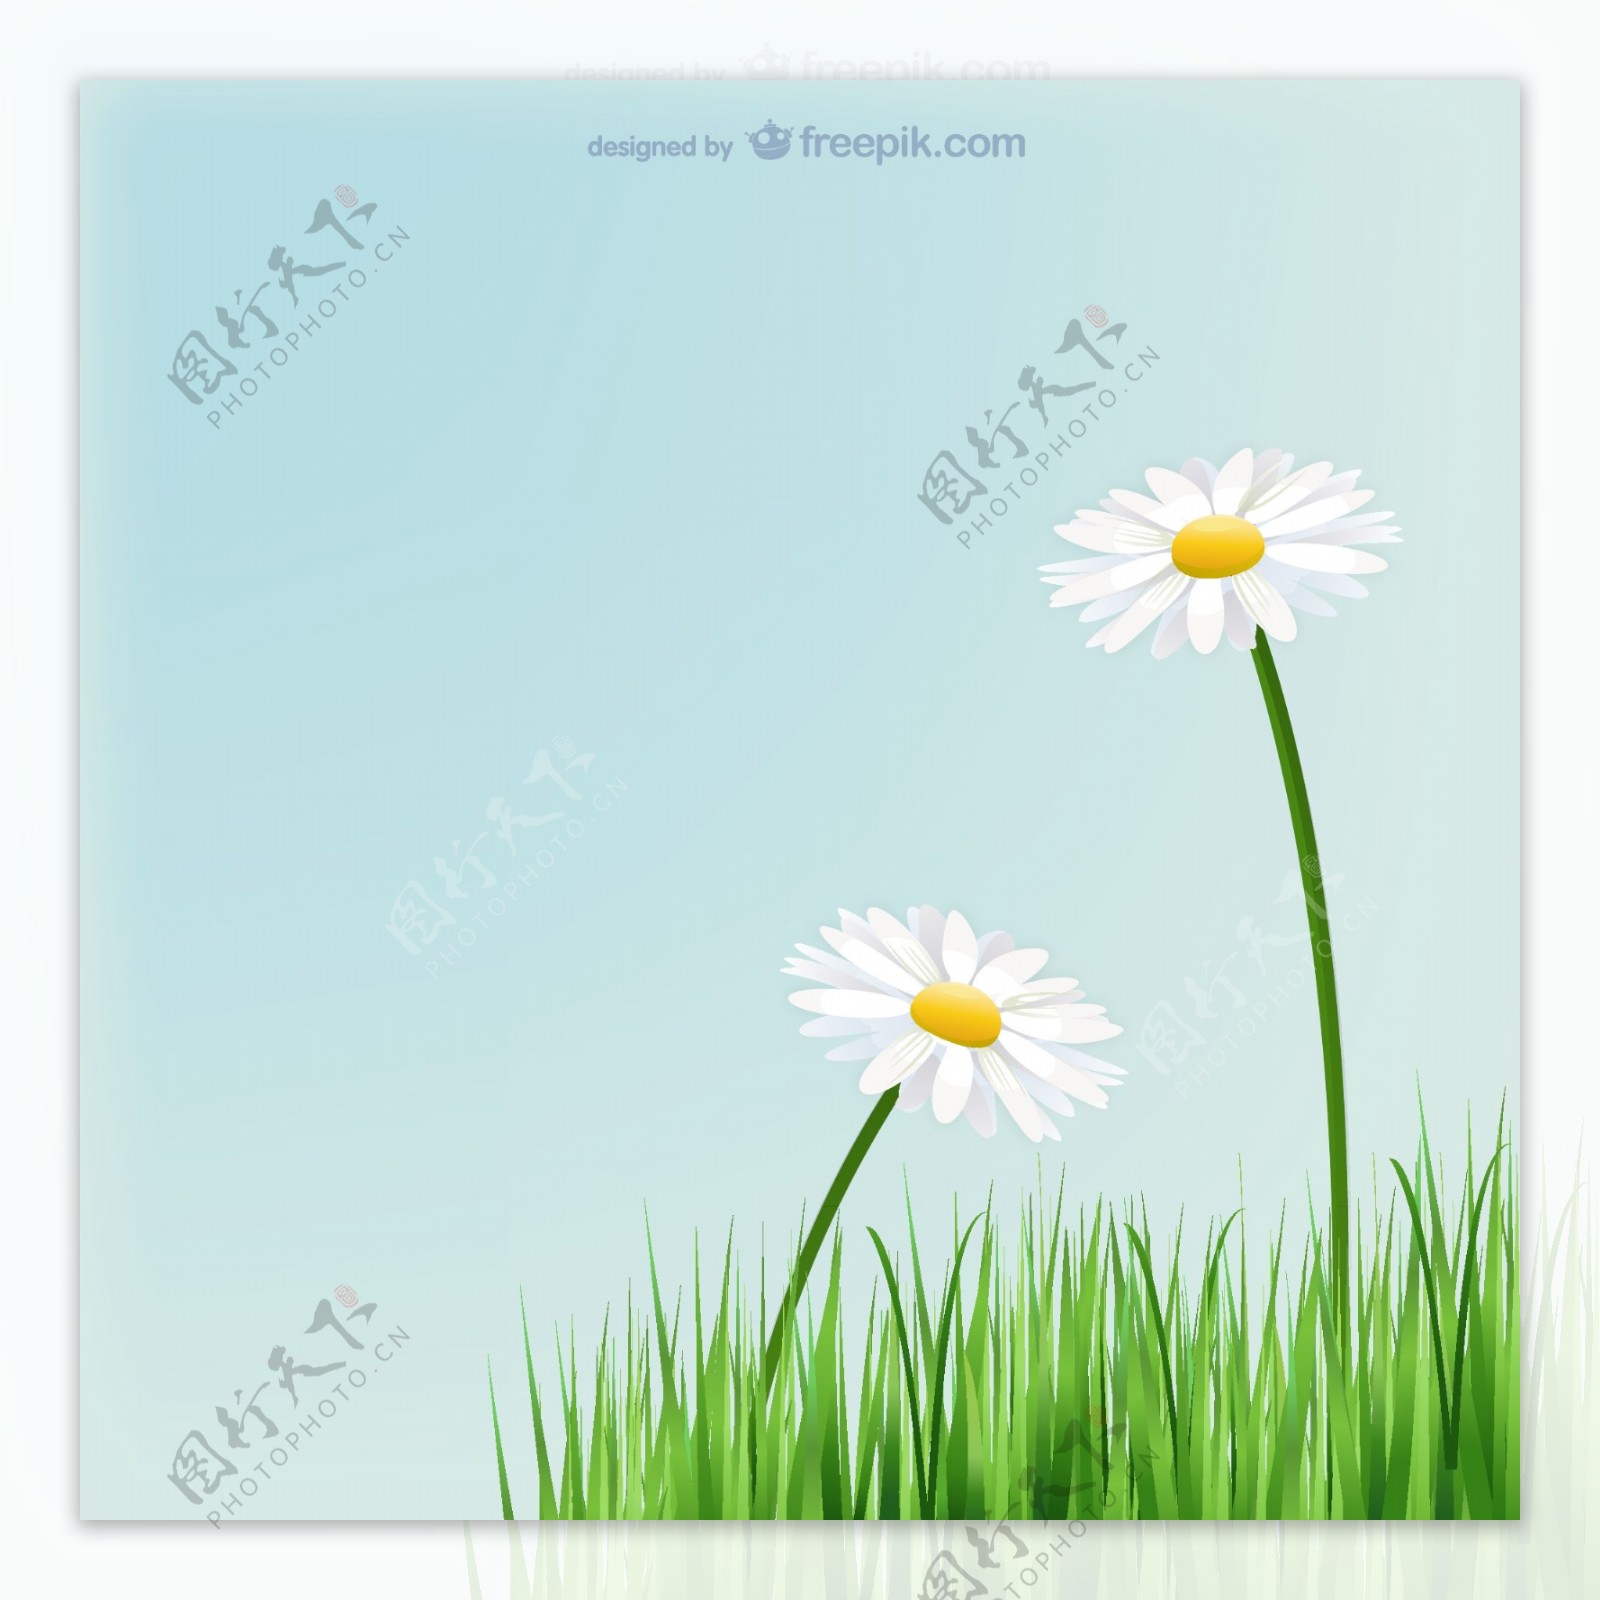 美丽白色菊花素材草地菊花背景图片